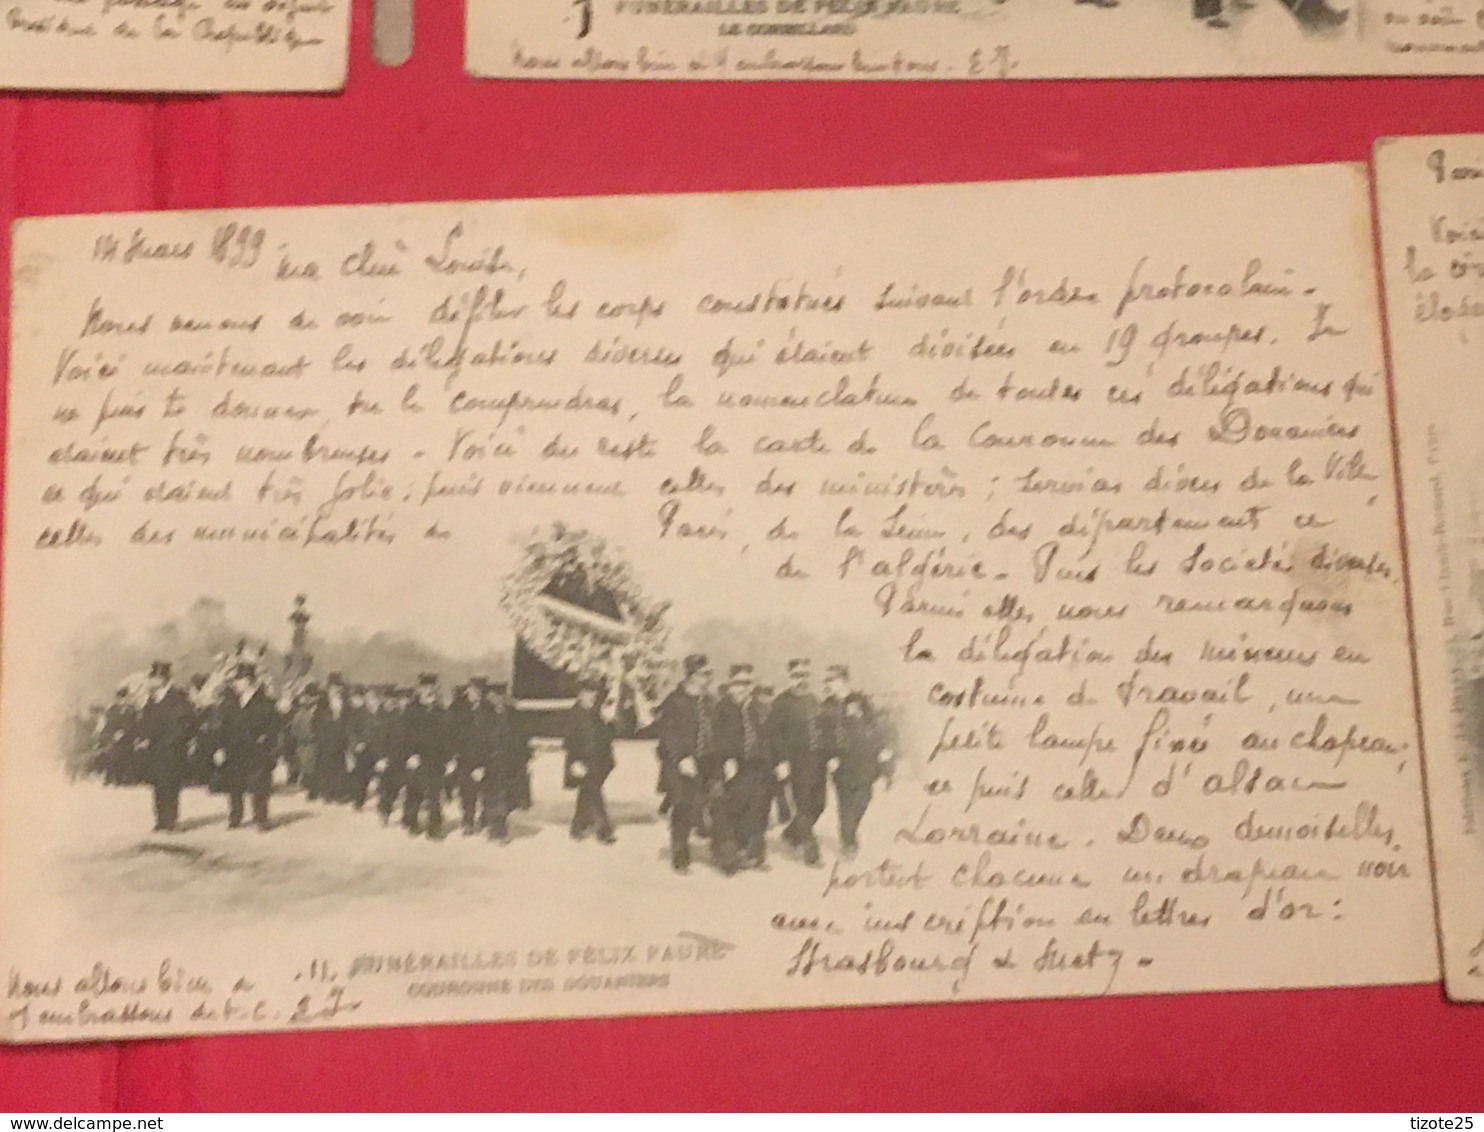 Lot Paris President 13 Cpa  Témoignages Défilé honneurs militaires   13 CPA de 1899 des  Funérailles de Félix Faure